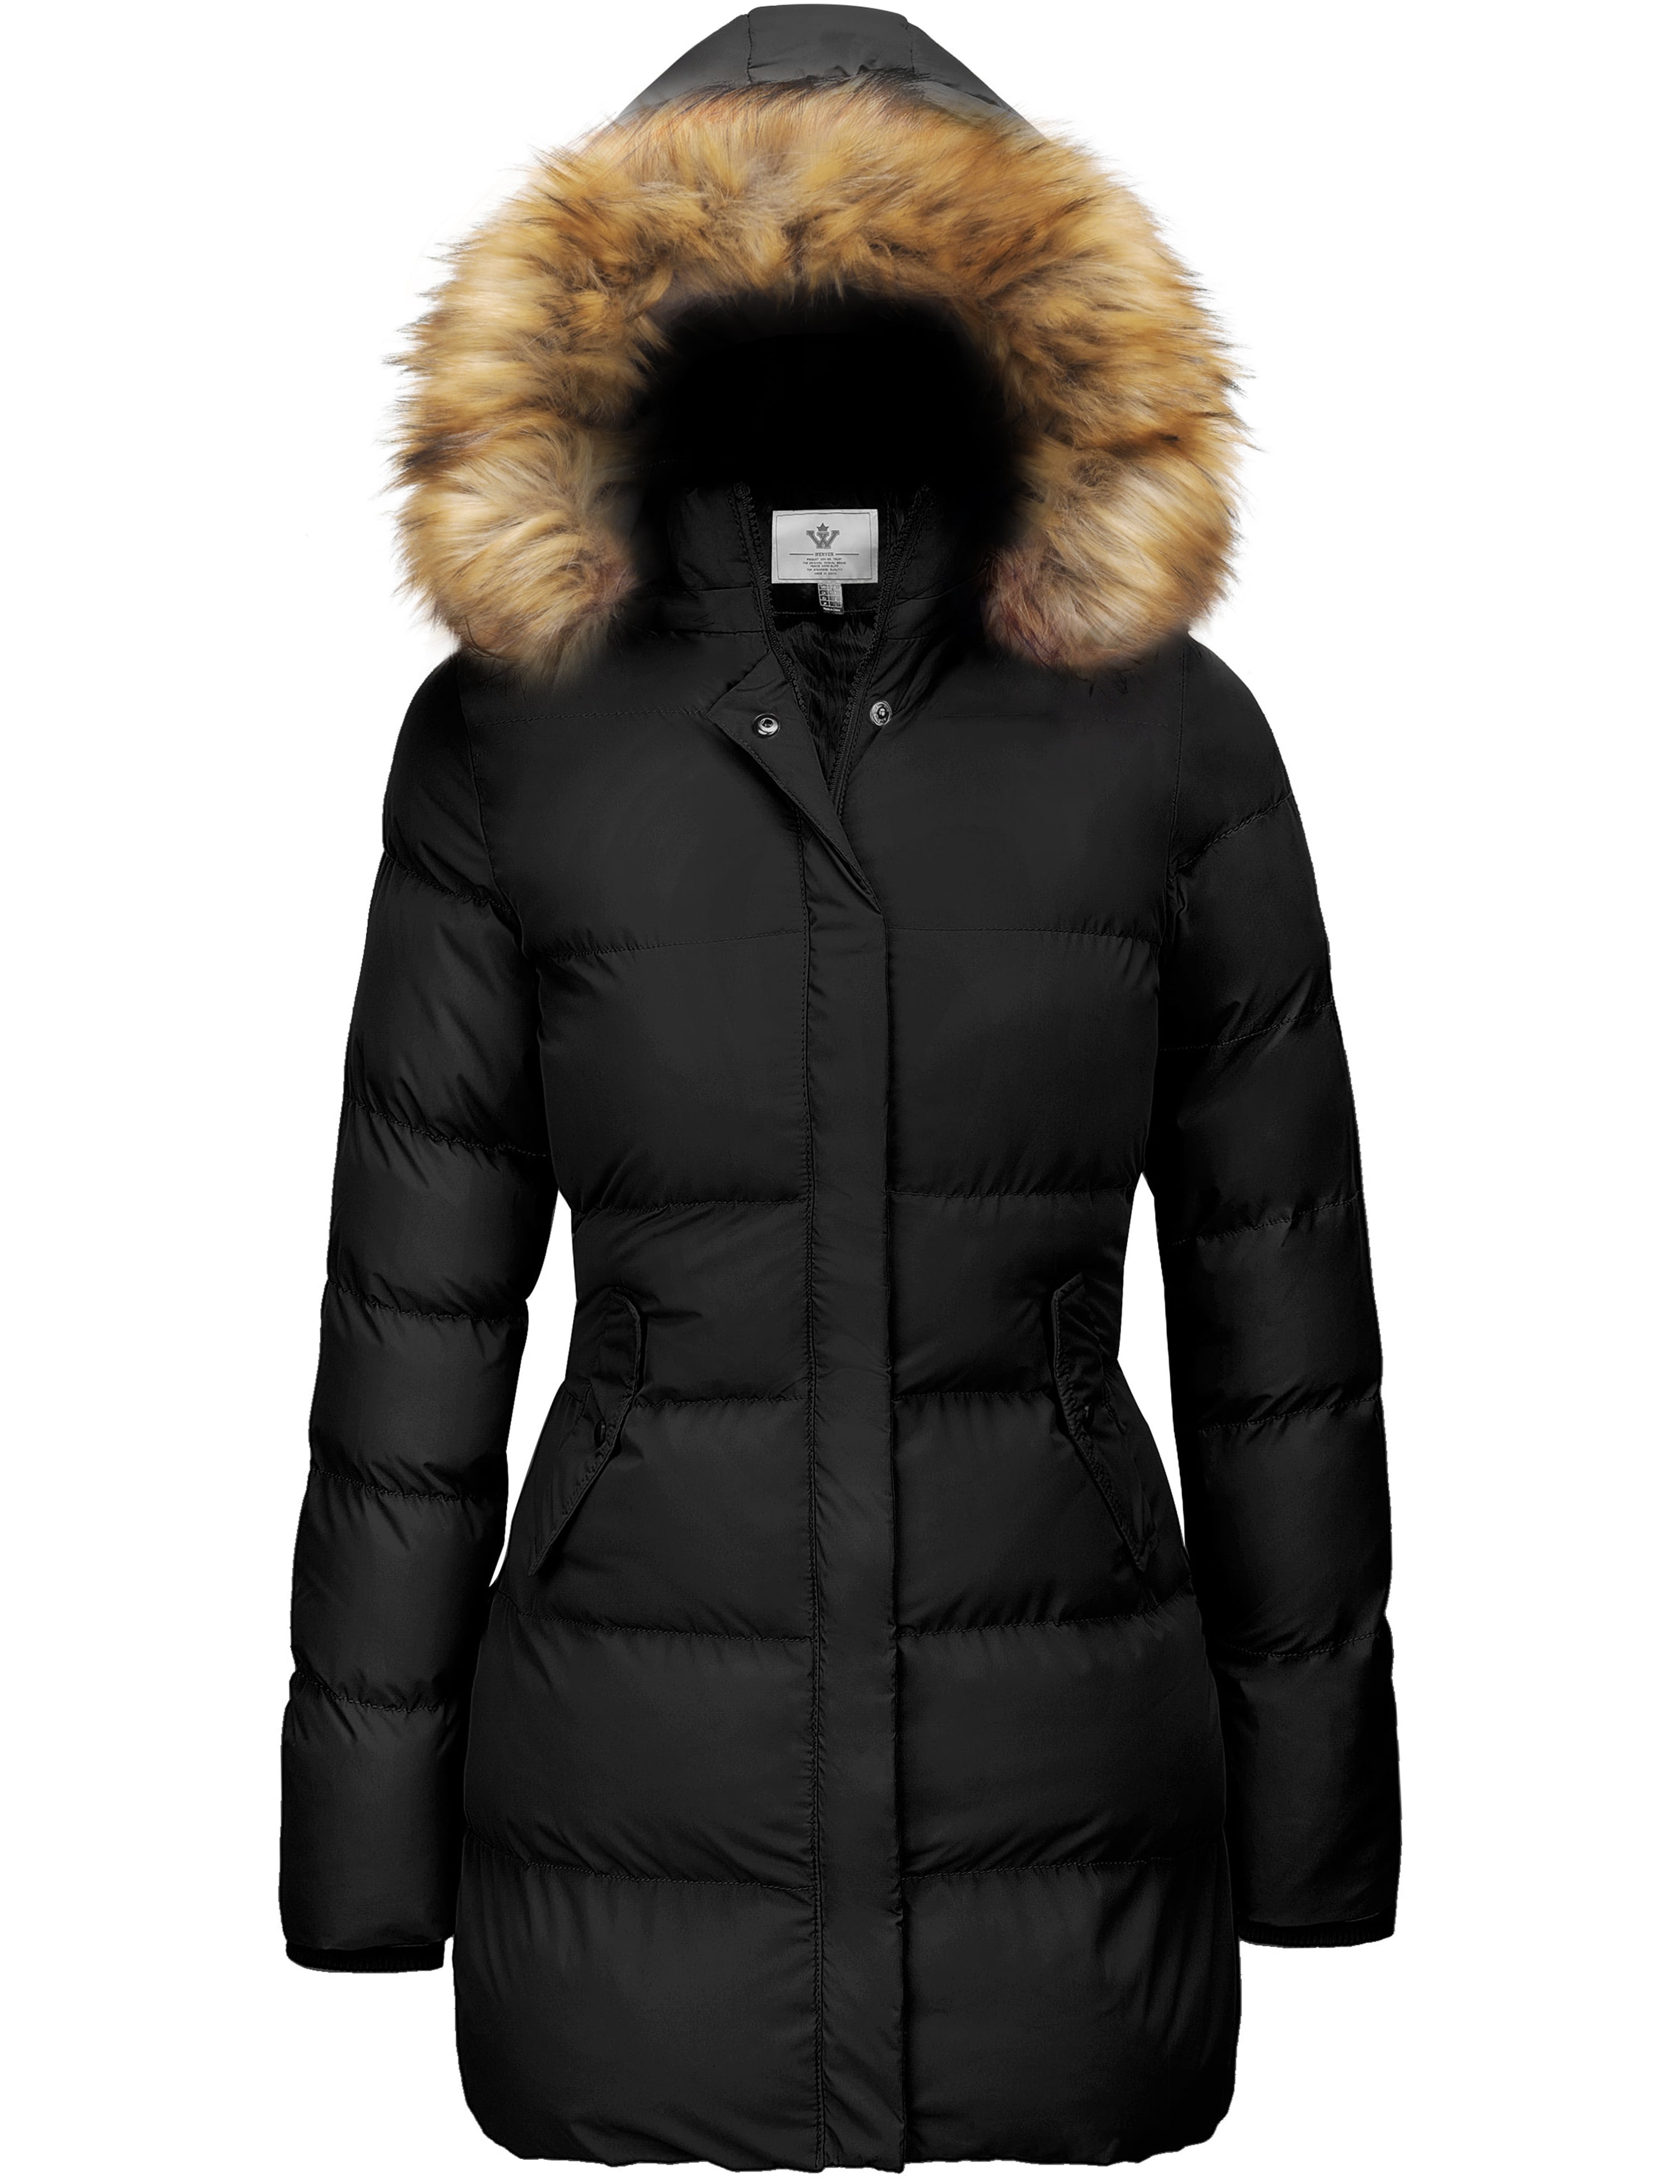 WenVen Women's Winter Coat Puffer Coat Warm Quilted Jacket with Hood ...